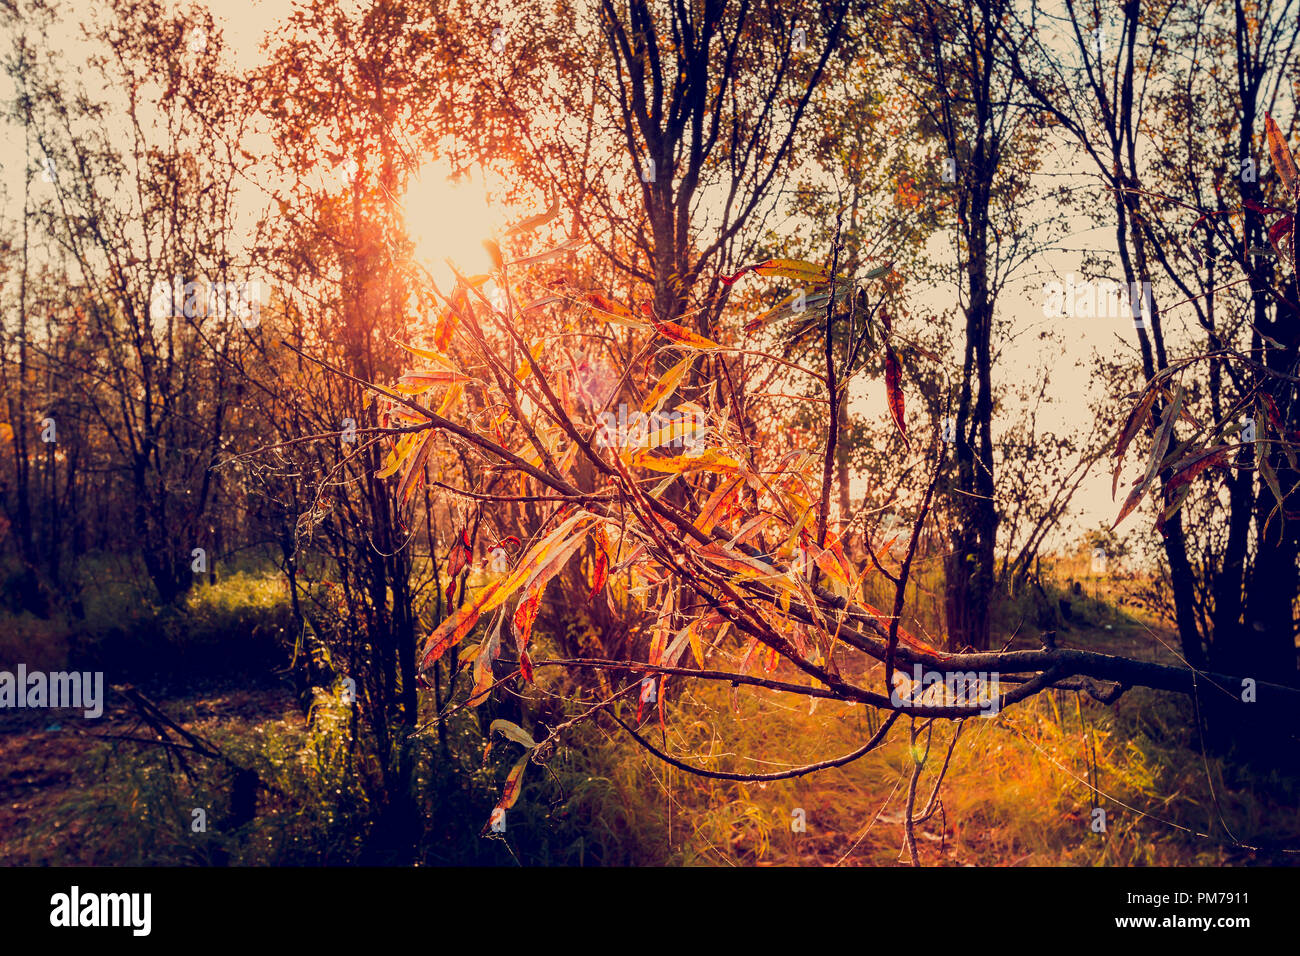 El sunbeam encendida la luz amarilla de una rama de árbol con hojas oblongo Foto de stock